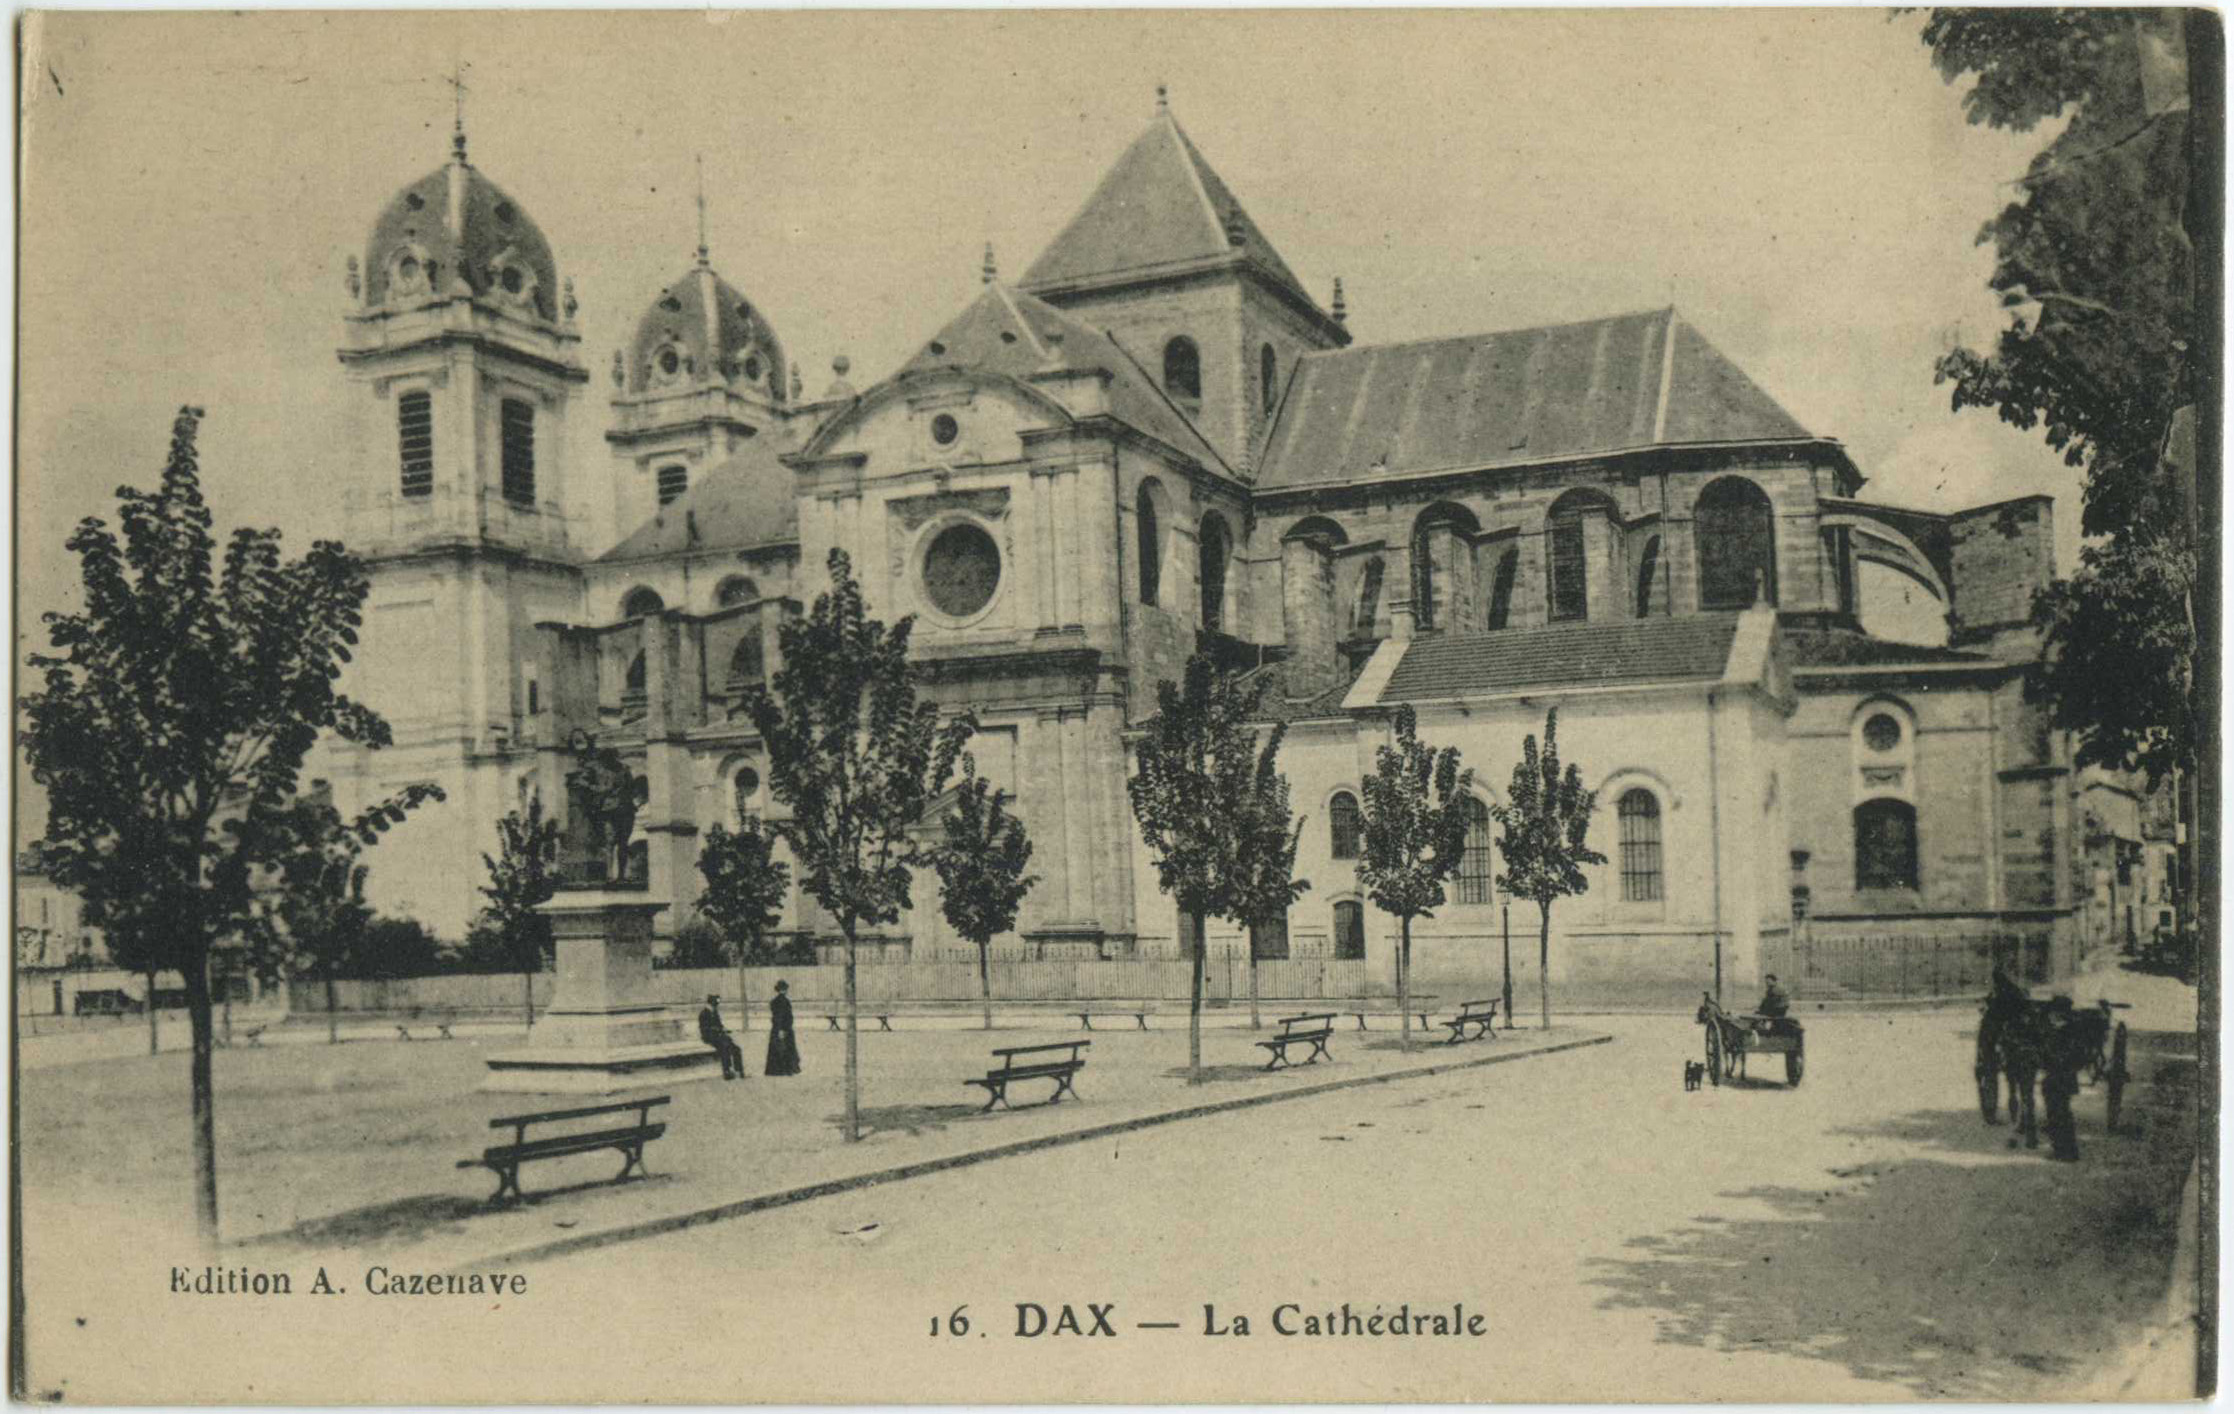 Dax - La Cathédrale